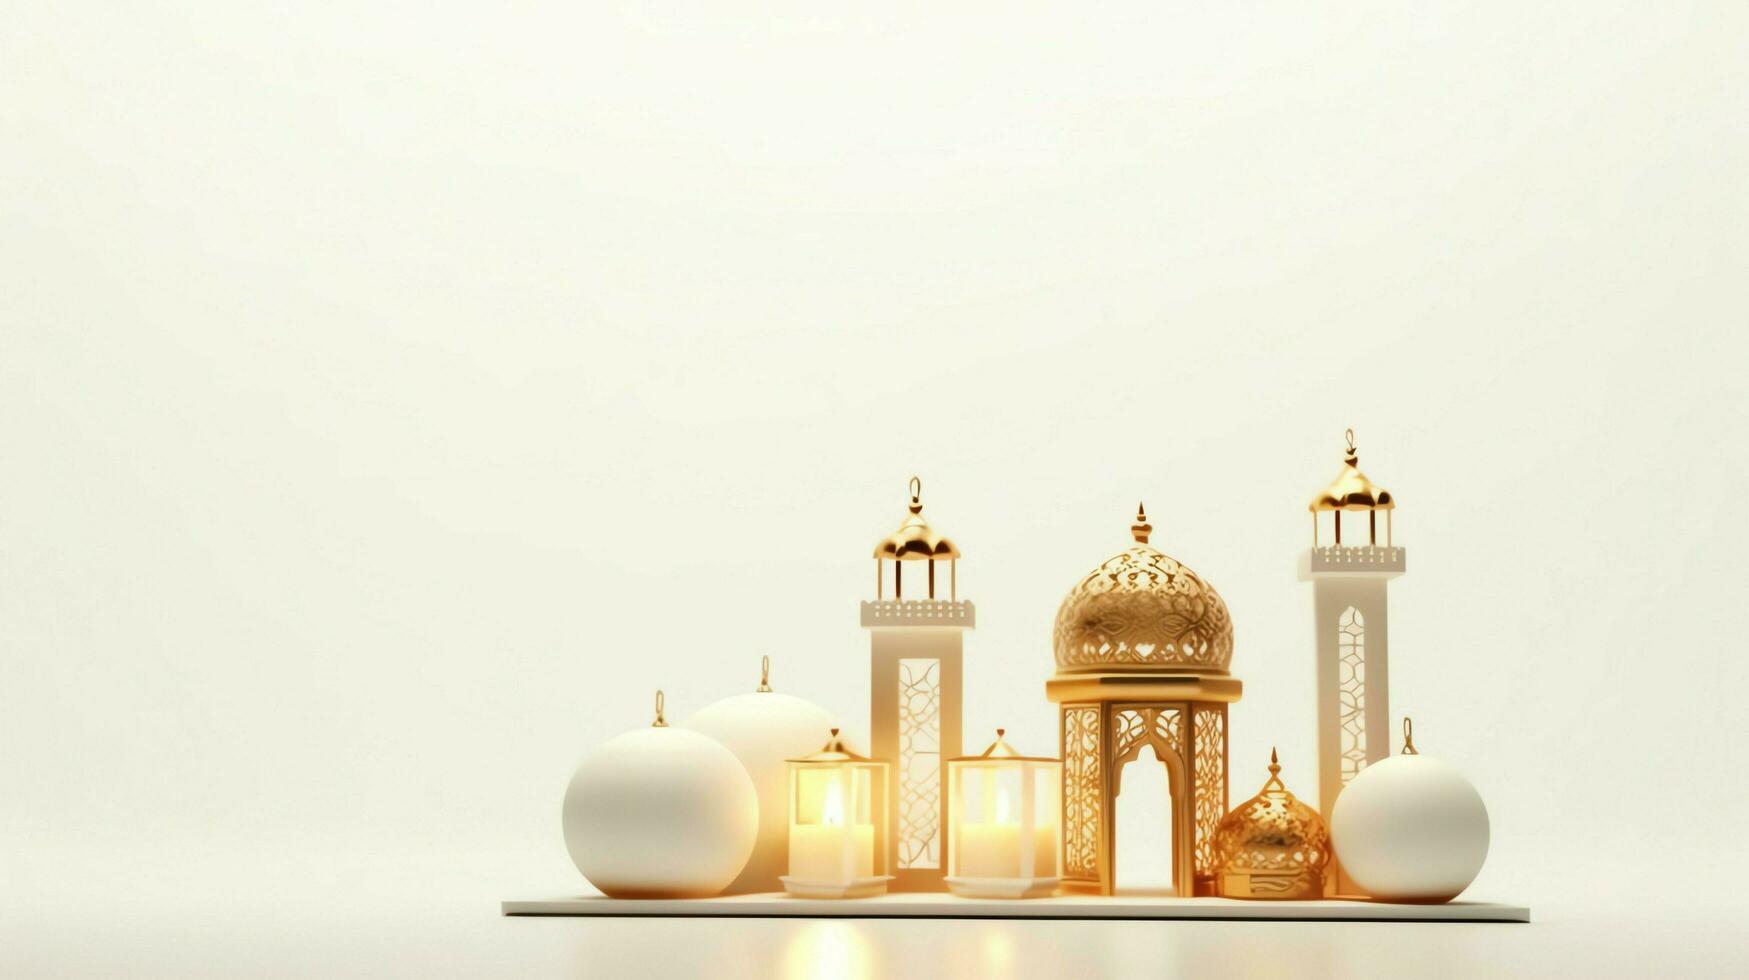 eid Mubarak e Ramadã kareem saudações com islâmico lanterna e mesquita. eid al fitr fundo. eid al fitr fundo do janela conceito de ai gerado foto